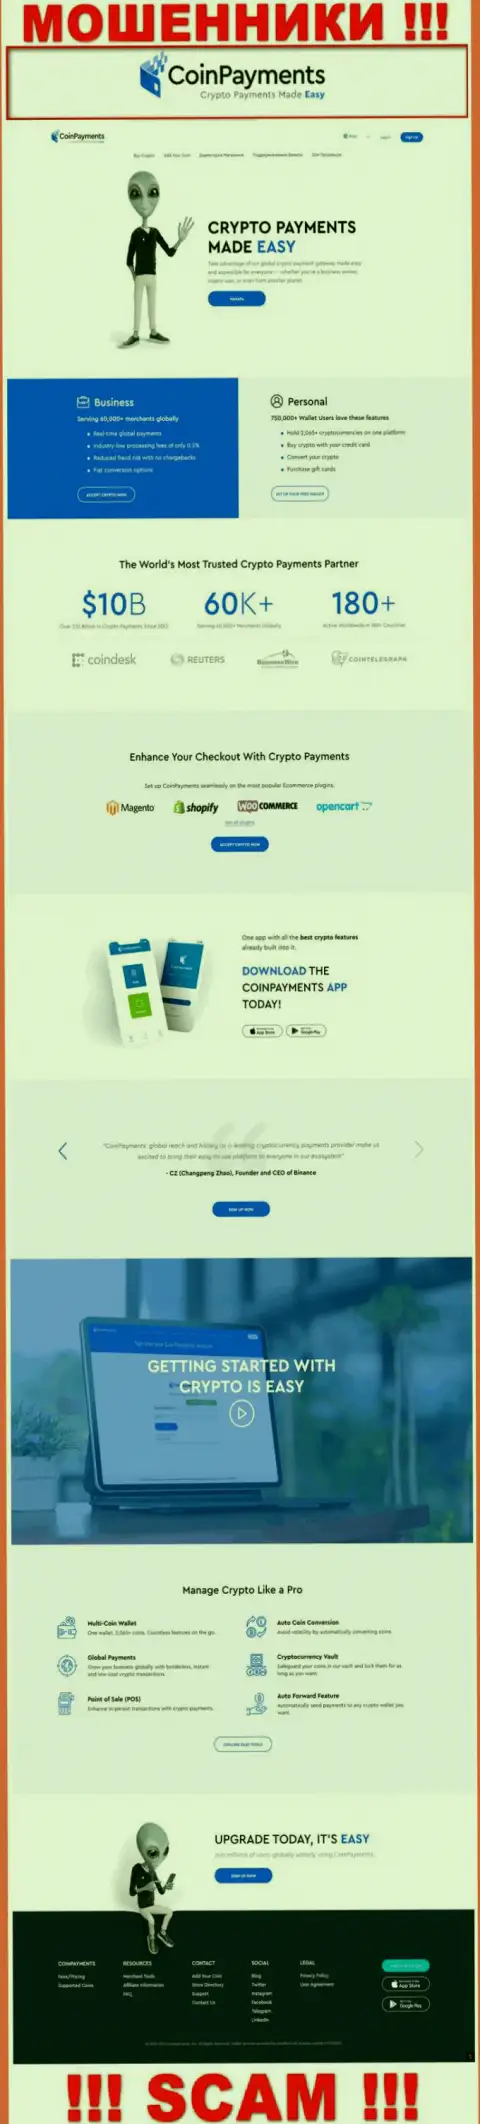 CoinPayments Net - это веб-портал организации Coinpayments Inc, типичная страница мошенников